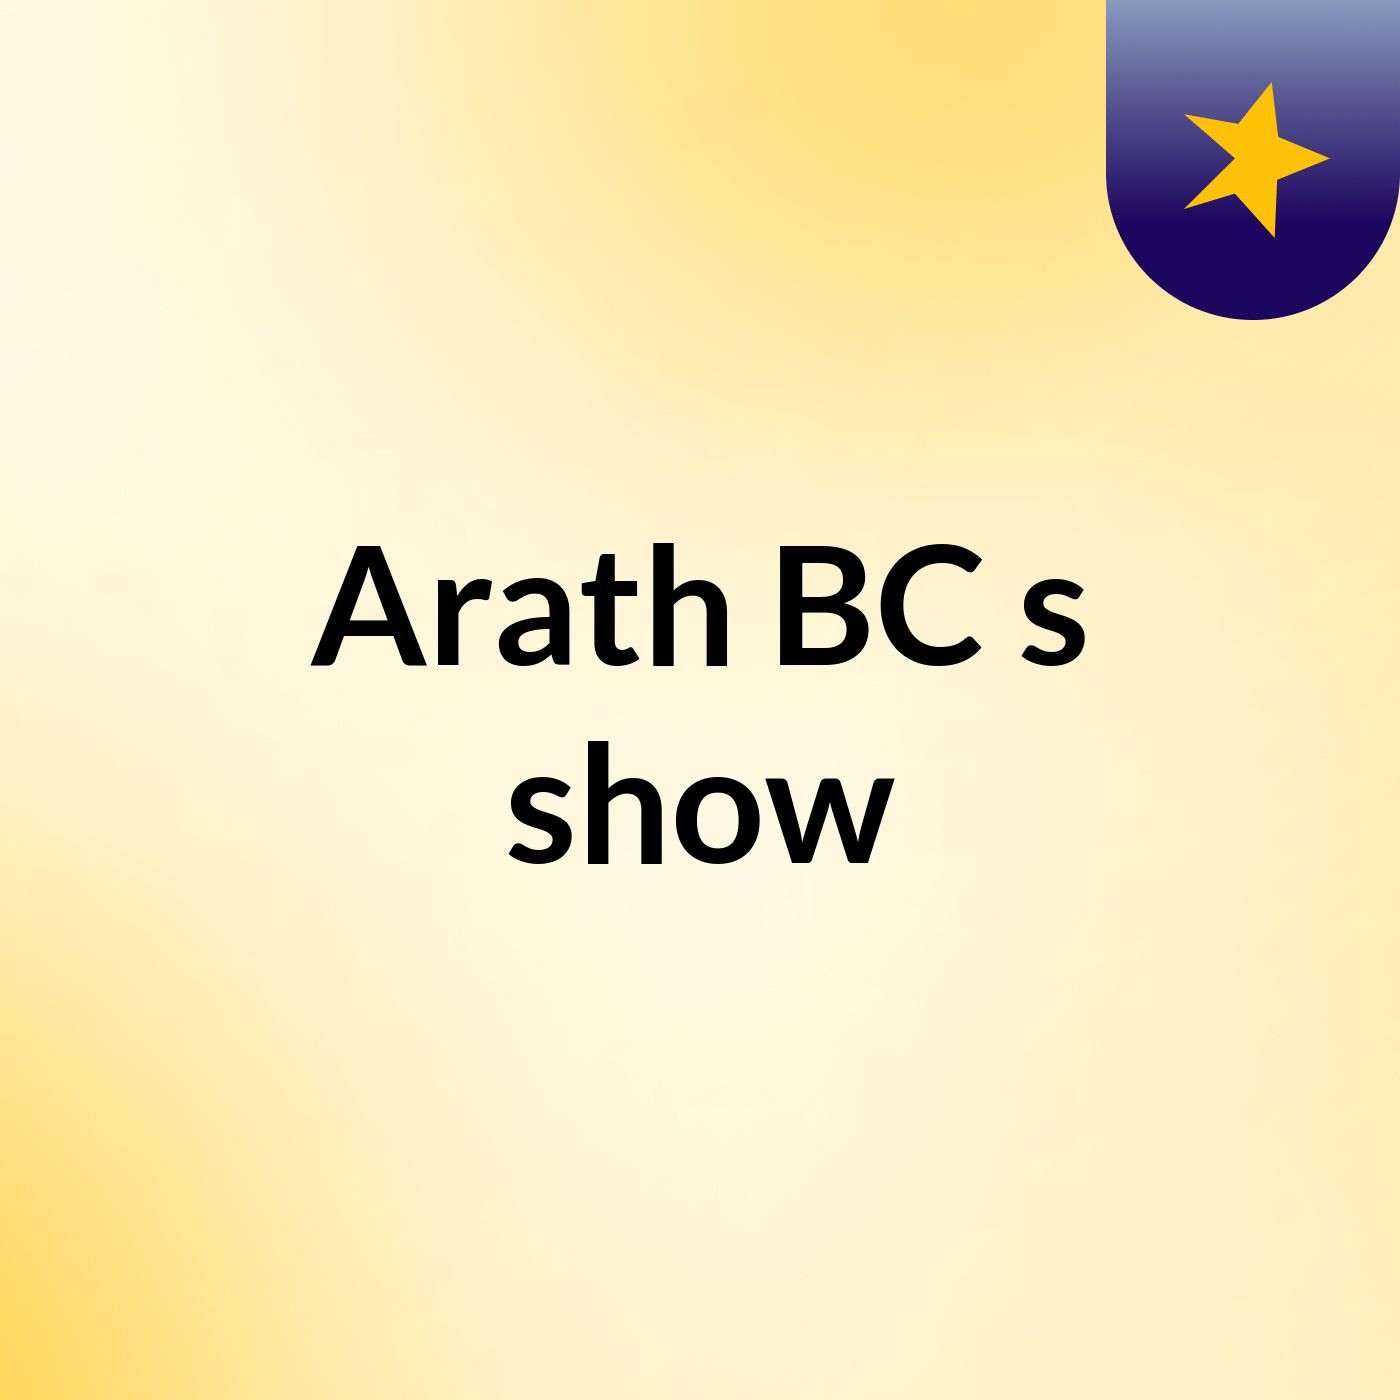 Arath BC's show